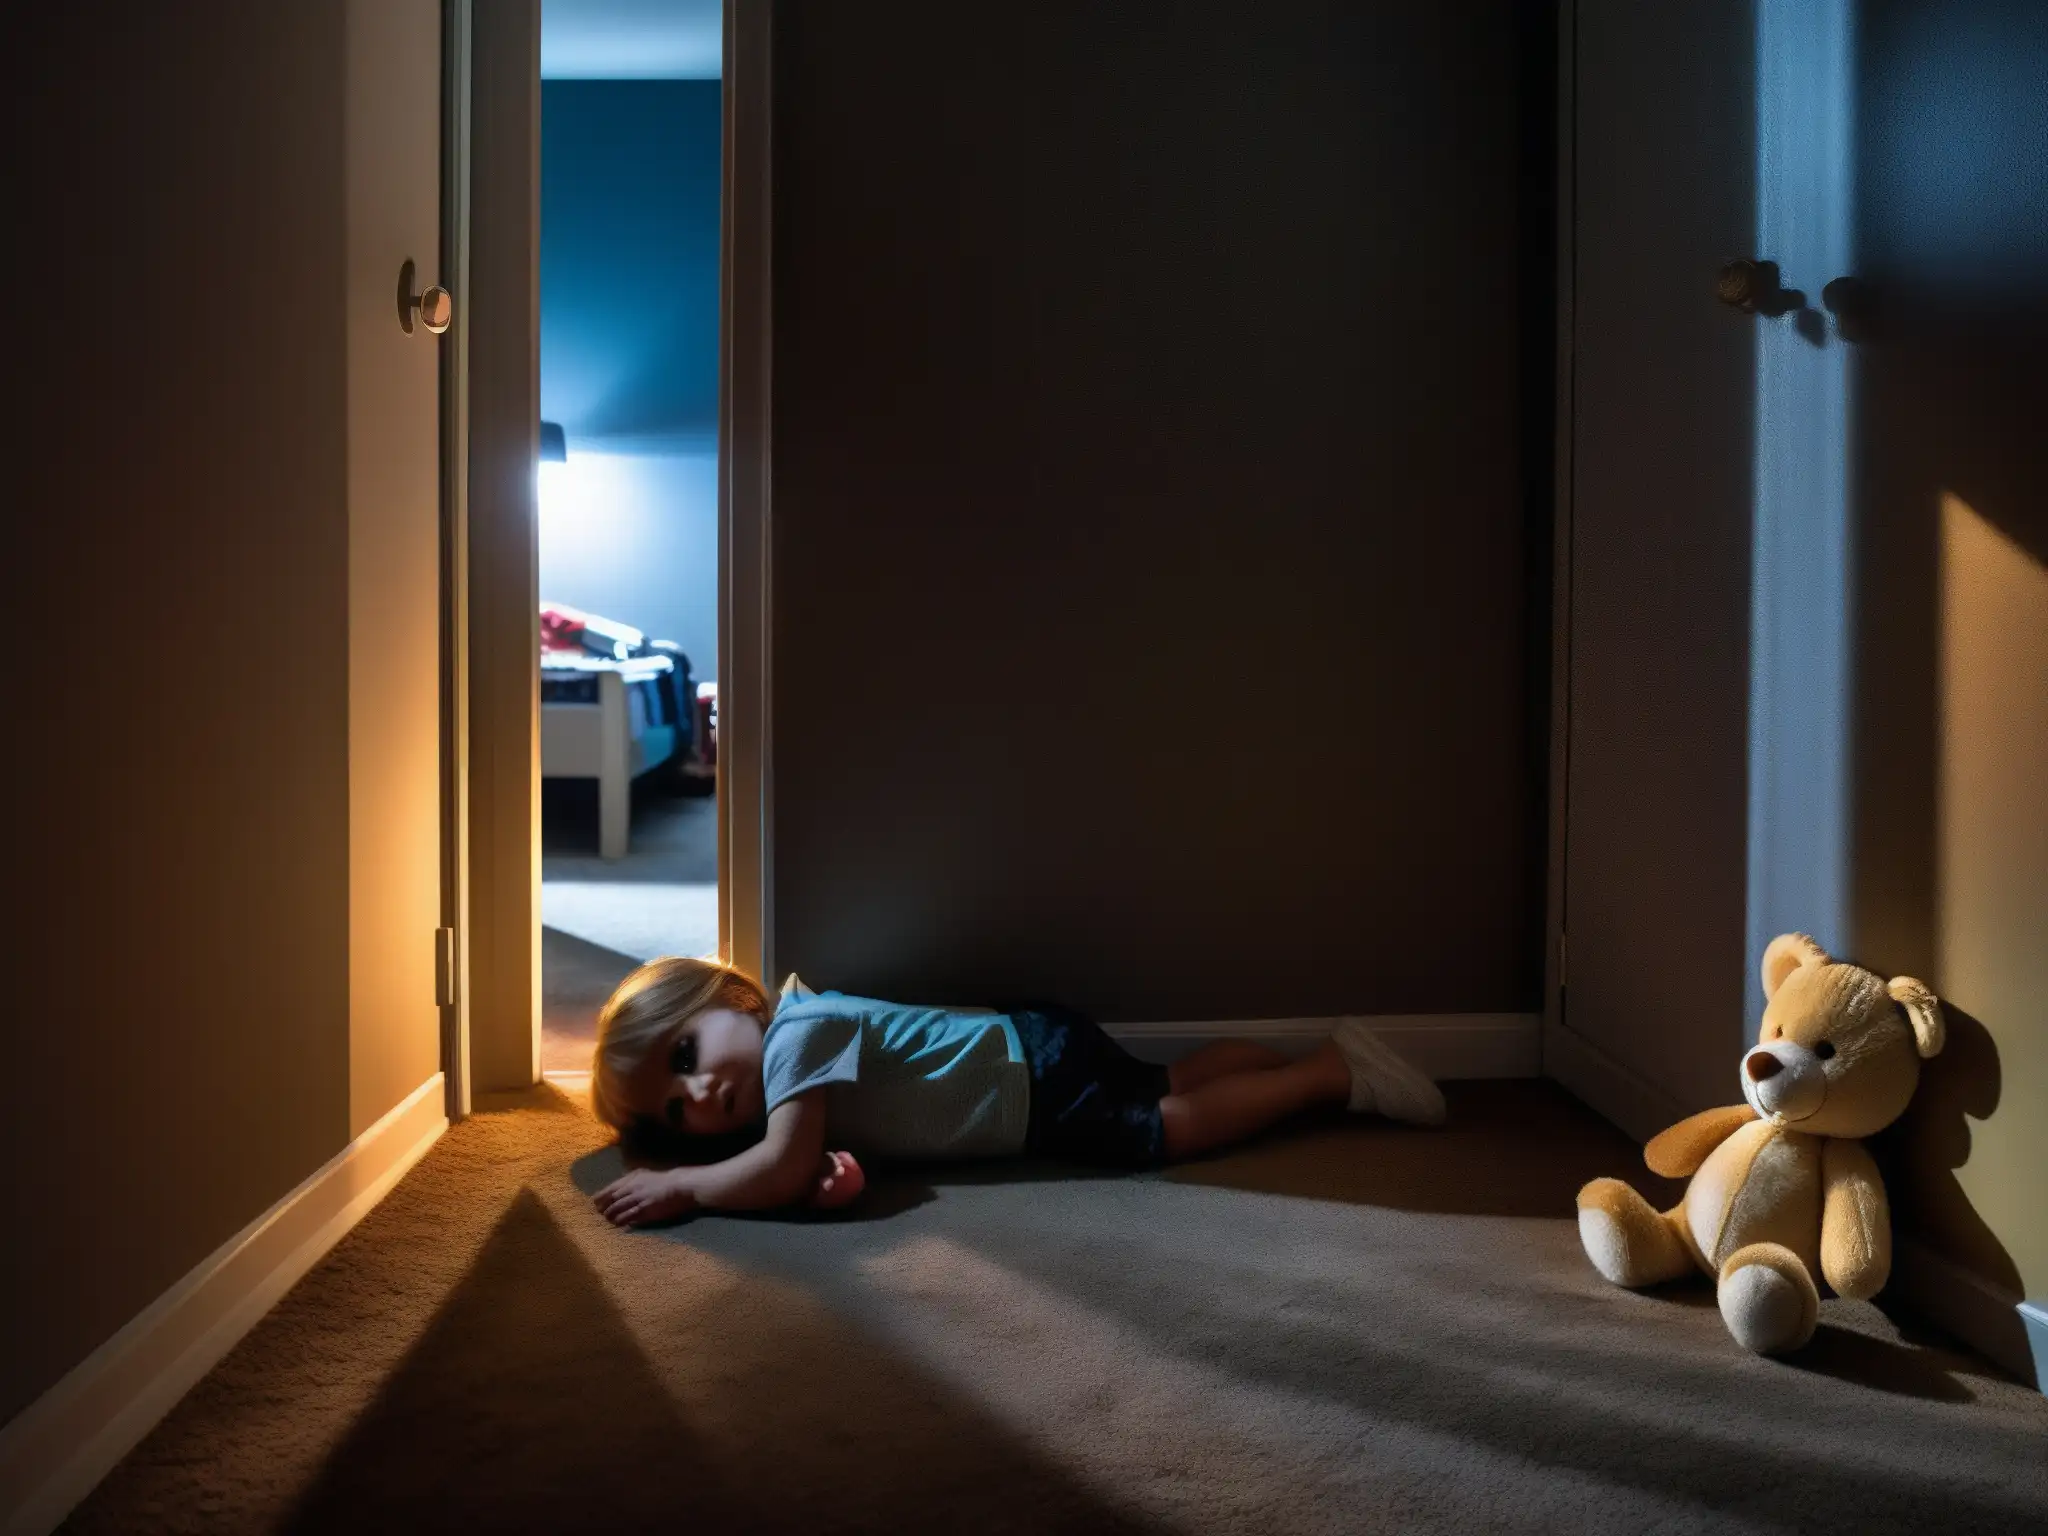 Un niño tenso y asustado mira el espacio oscuro debajo de su cama, rodeado de juguetes dispersos